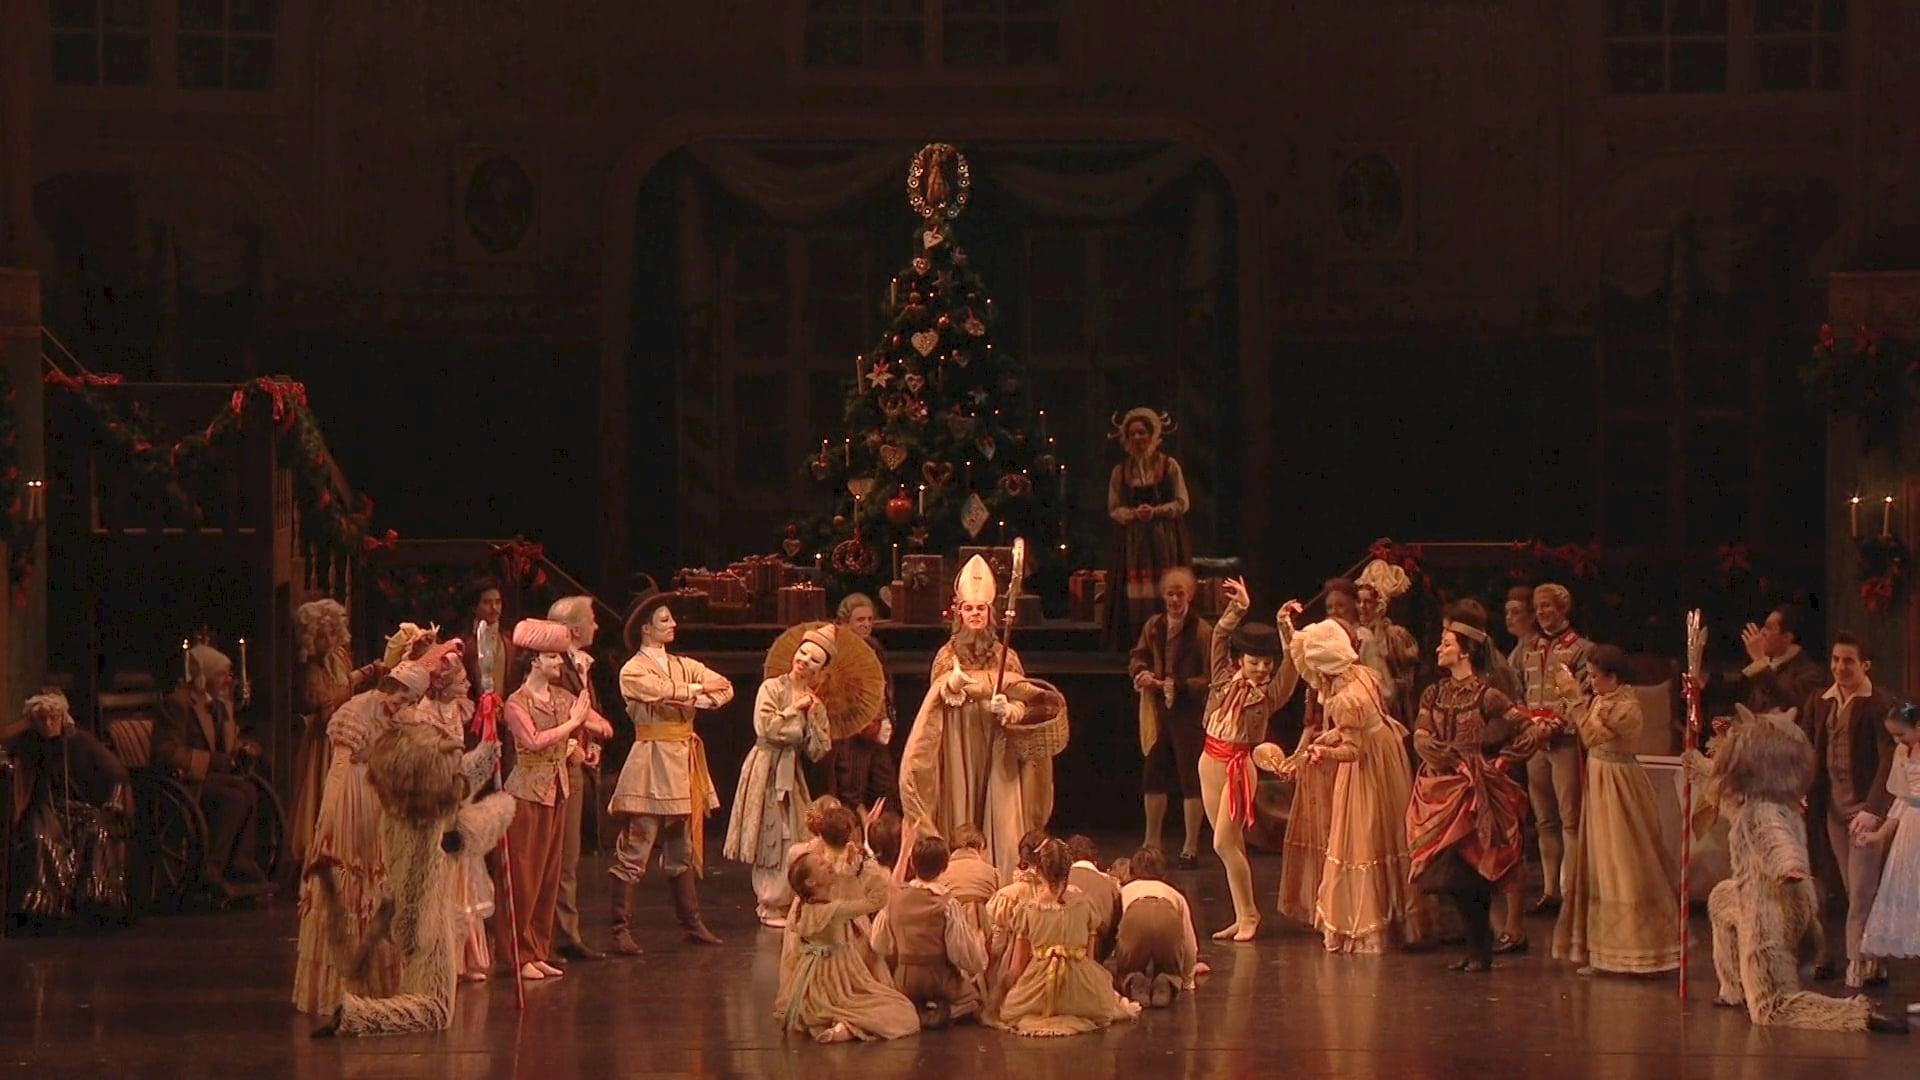 The Nutcracker - Royal Ballet backdrop